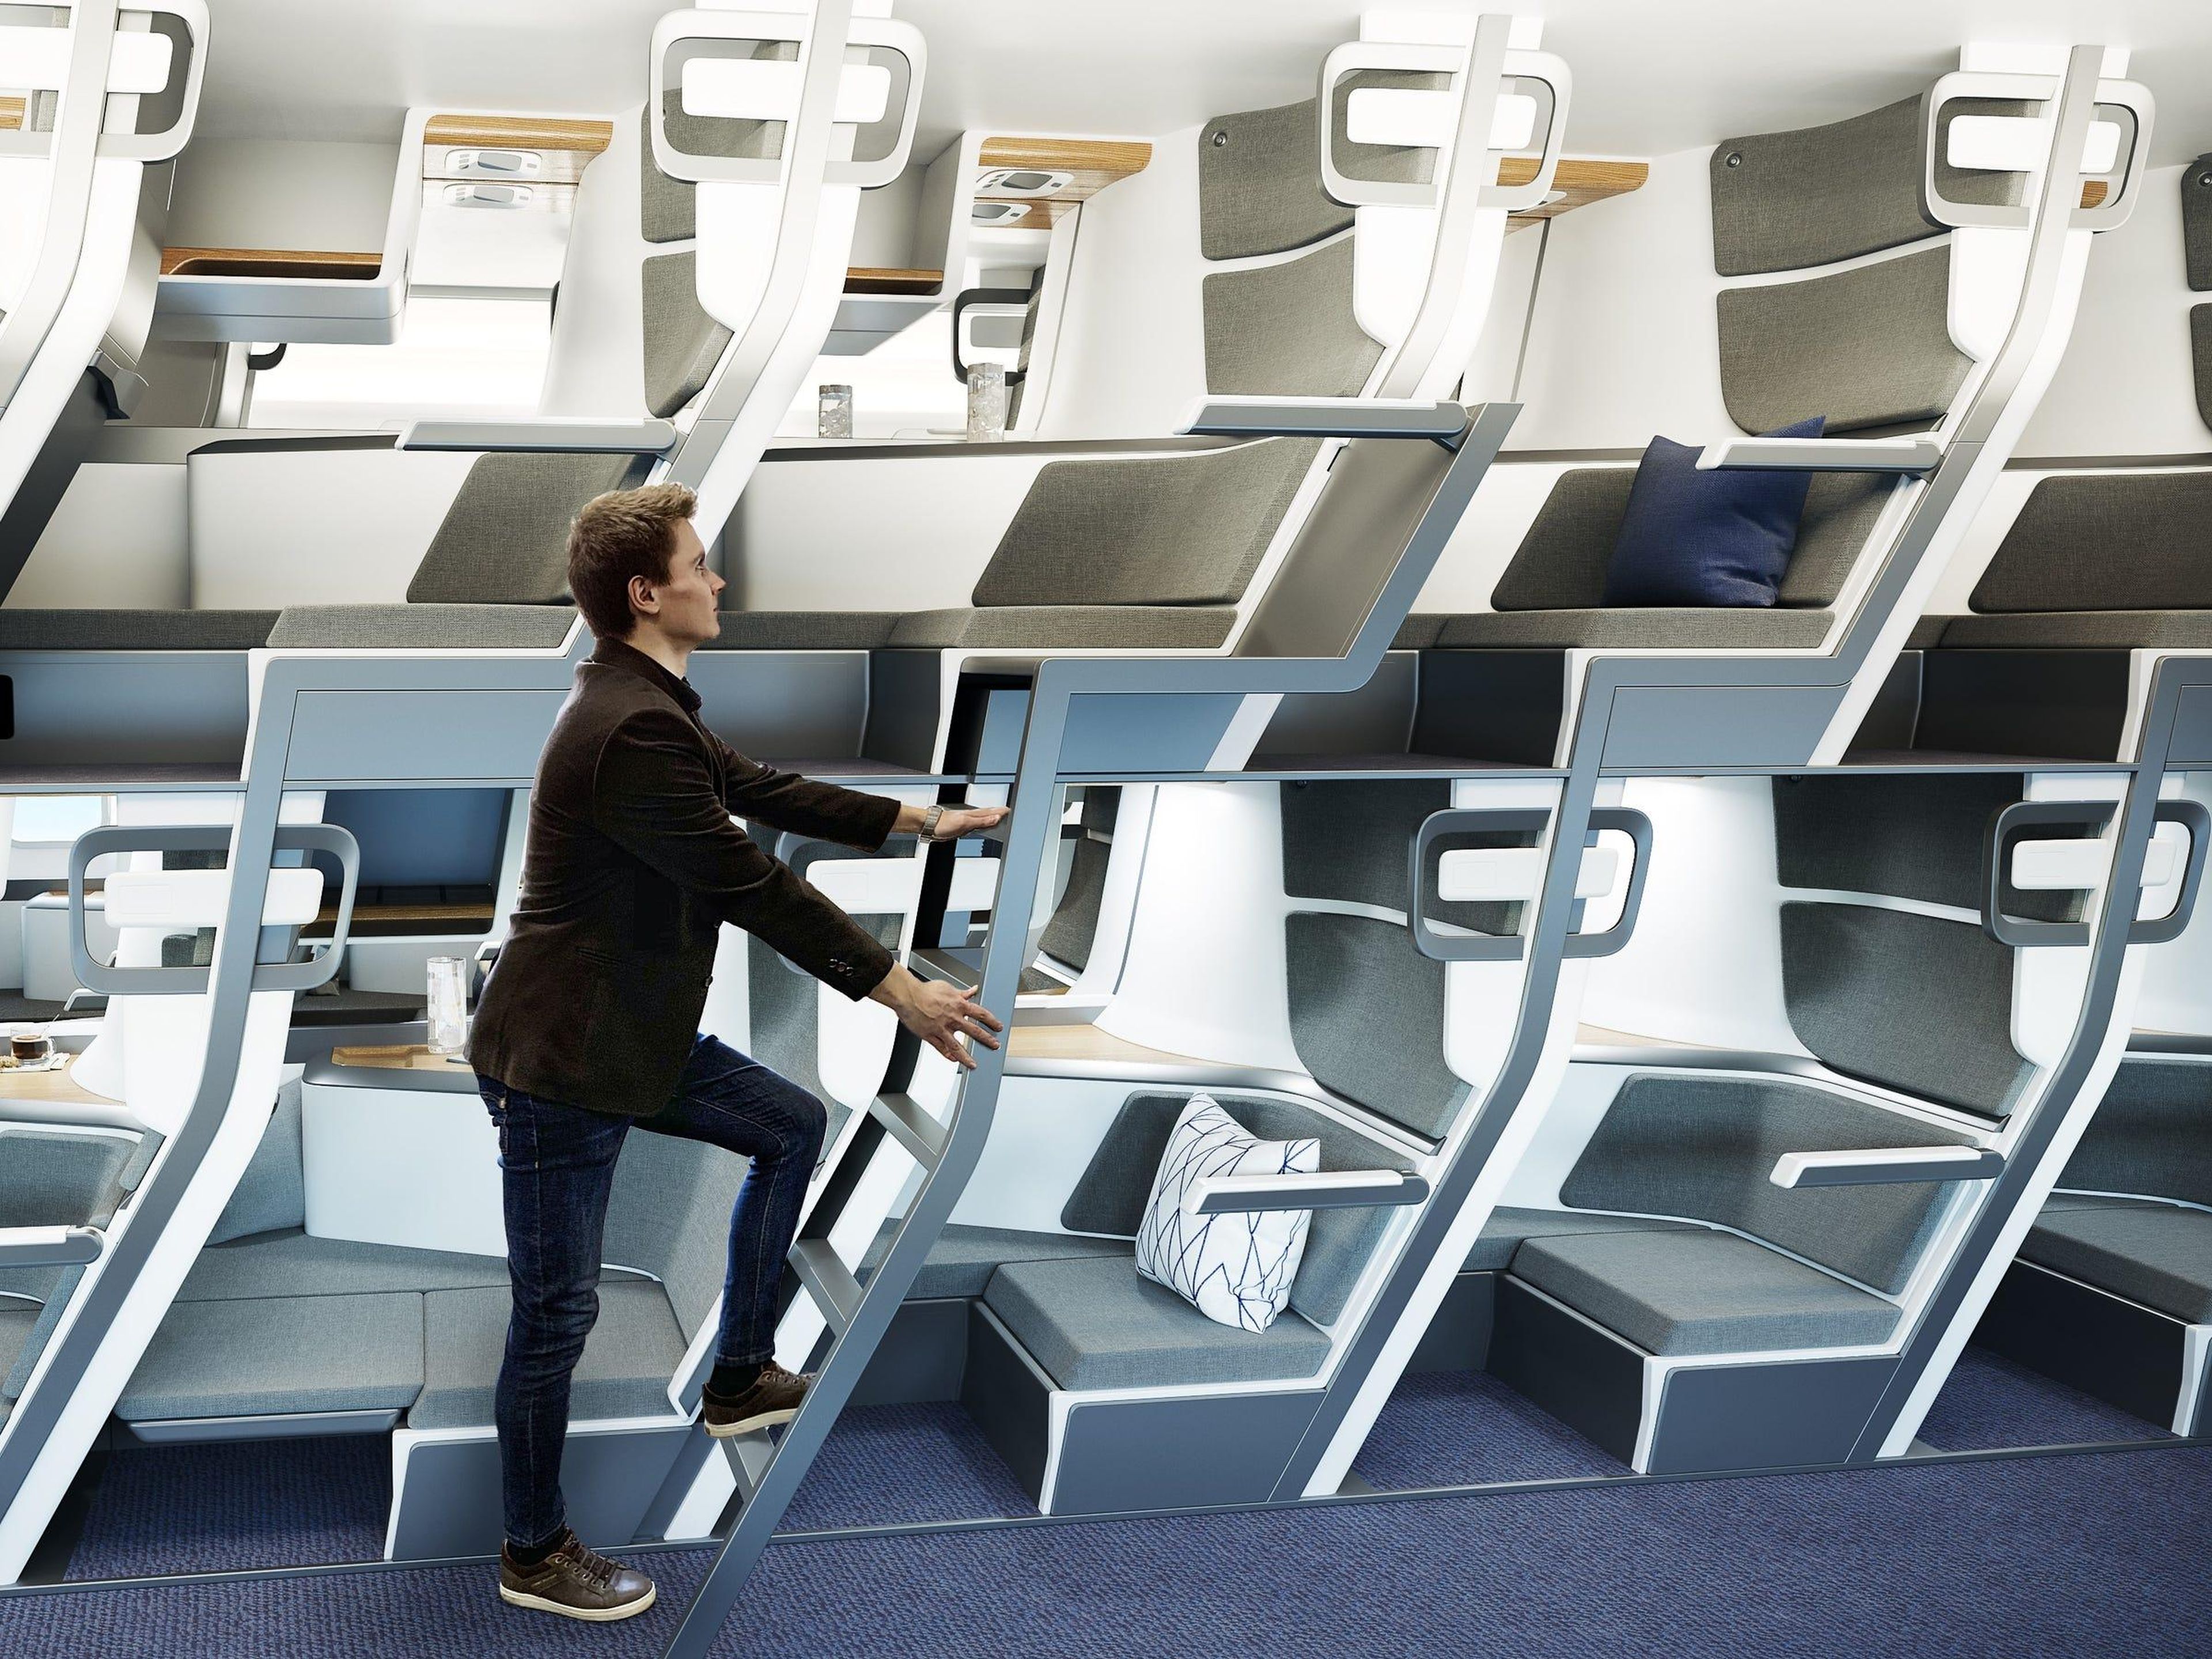 Este diseño permite una mayor privacidad, sin reducir el número de pasajeros.